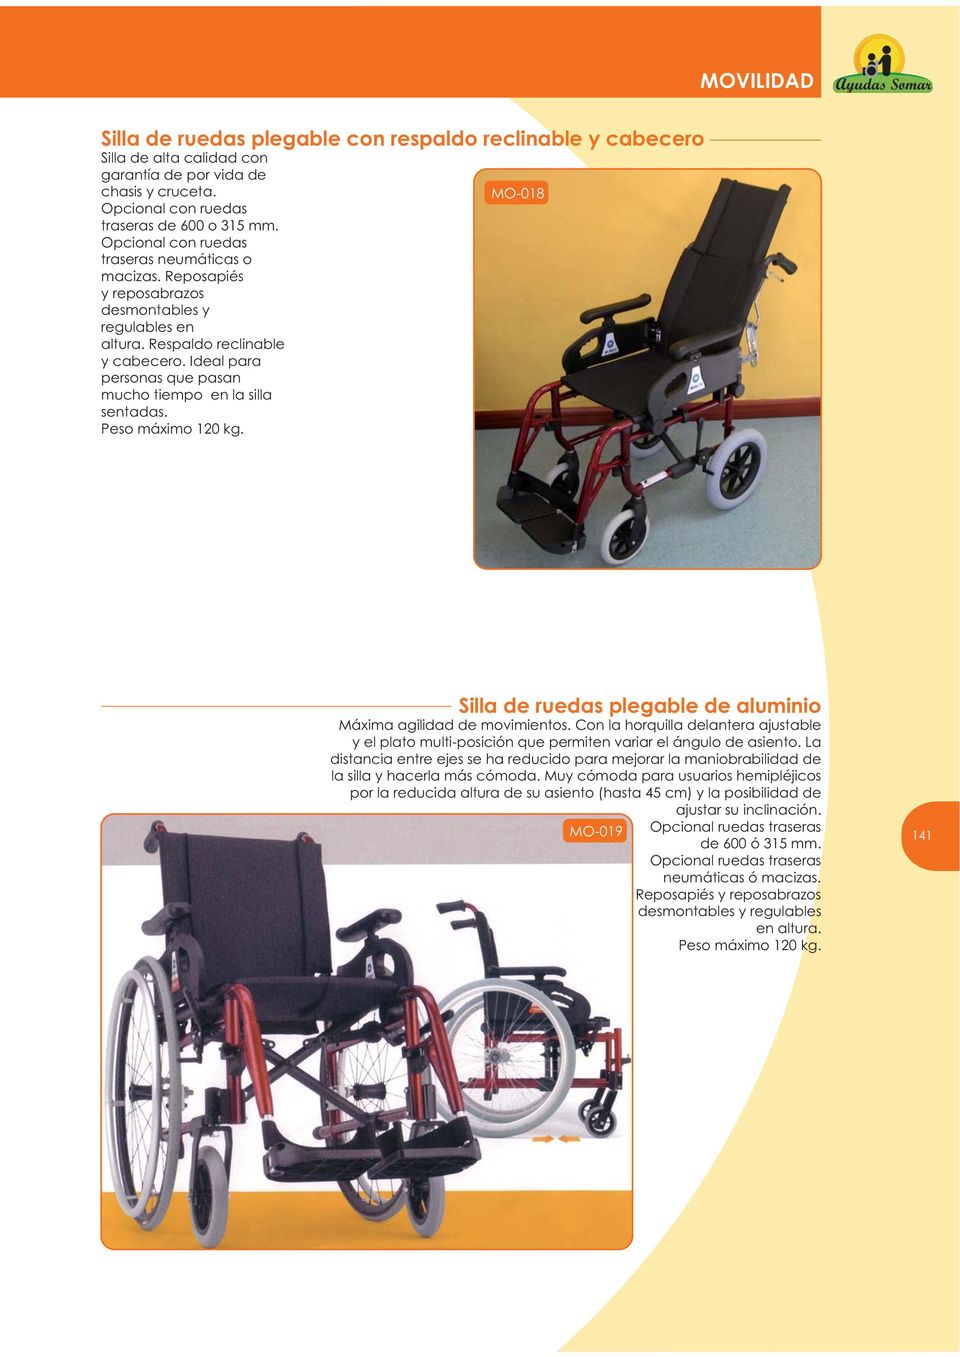 Ideal para personas que pasan mucho tiempo en la silla sentadas. Peso máximo 120 kg. MO-018 Silla de ruedas plegable de aluminio Máxima agilidad de movimientos.